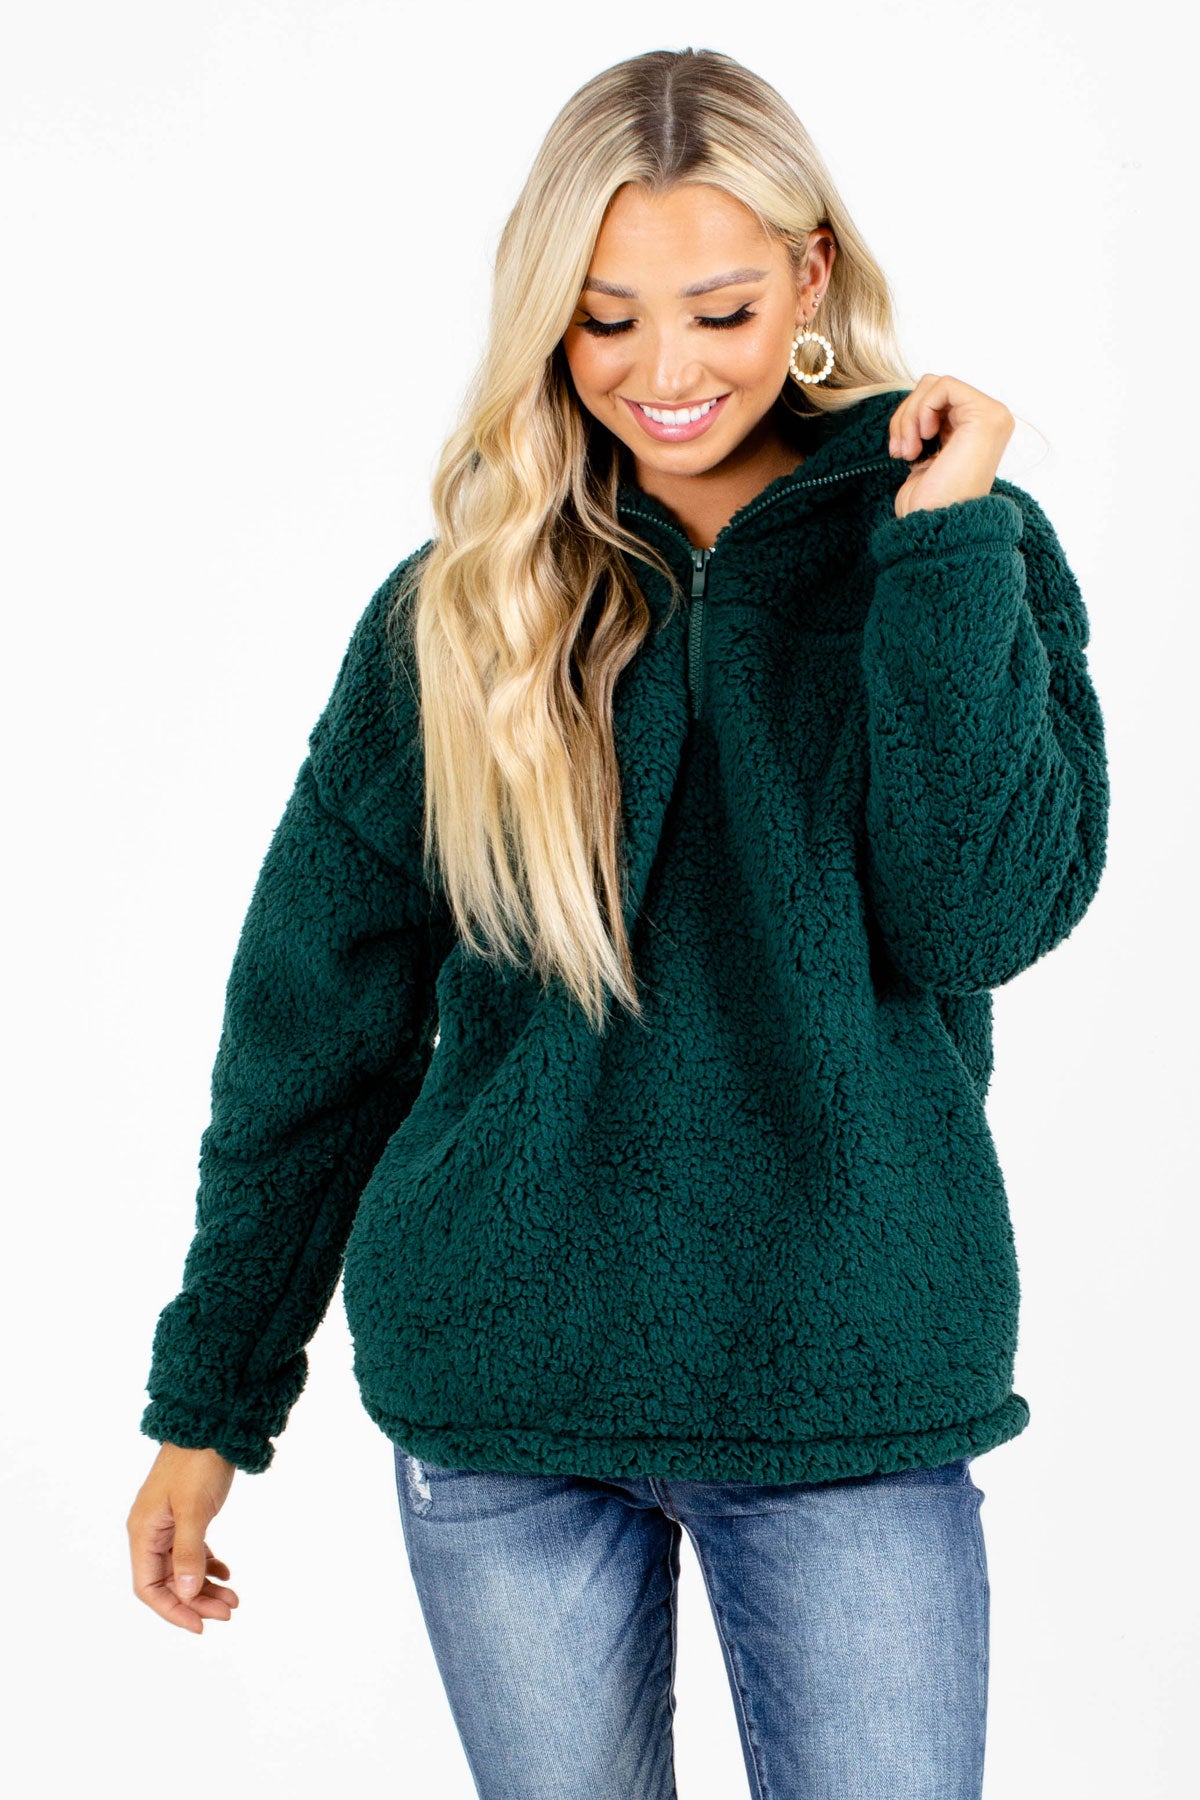 Dark Green Zip-Up Neckline Boutique Pullovers for Women